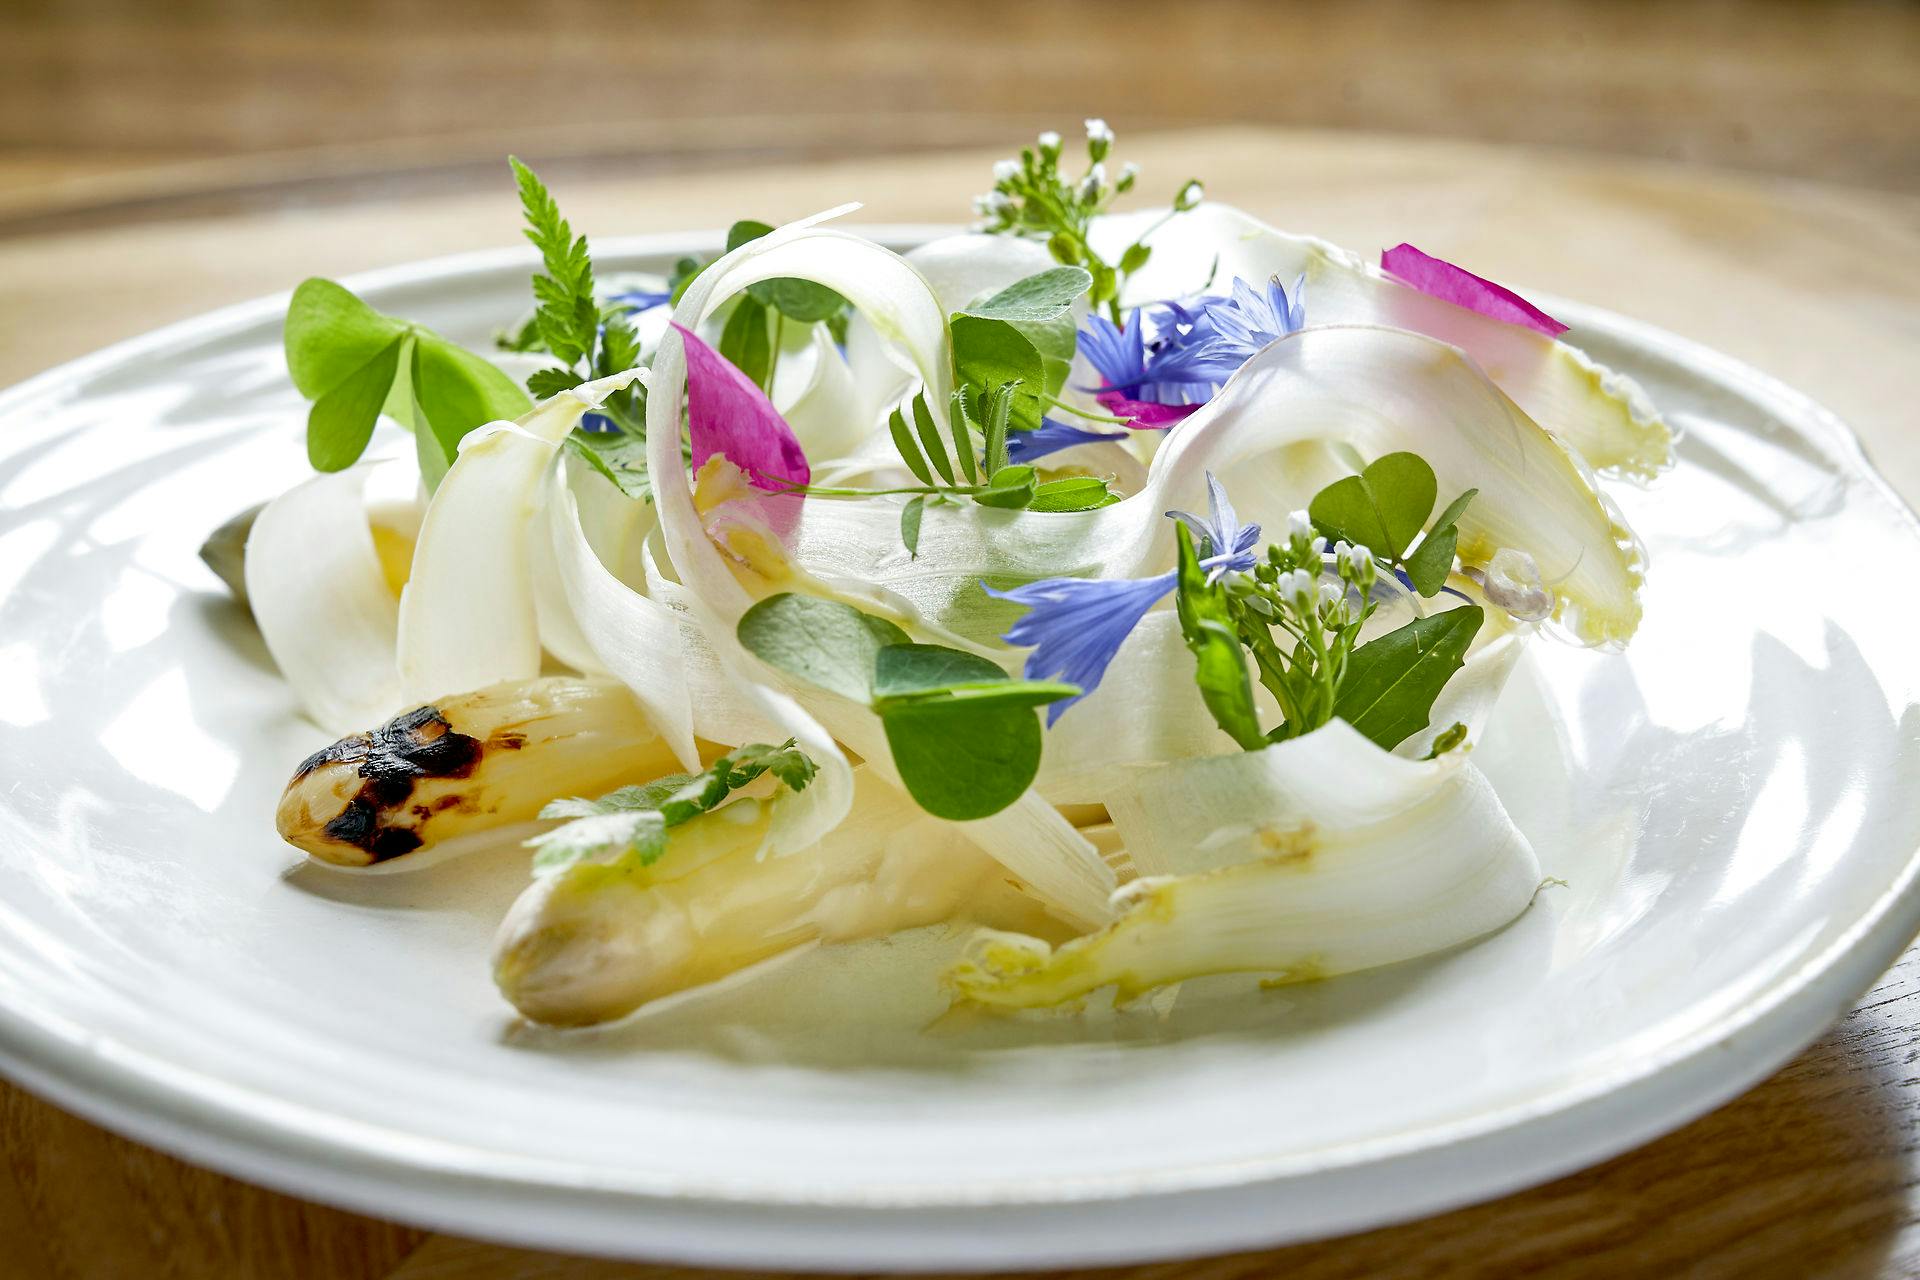 Det er nemt at blive sulten med så lækker en ret laver af asparges. 